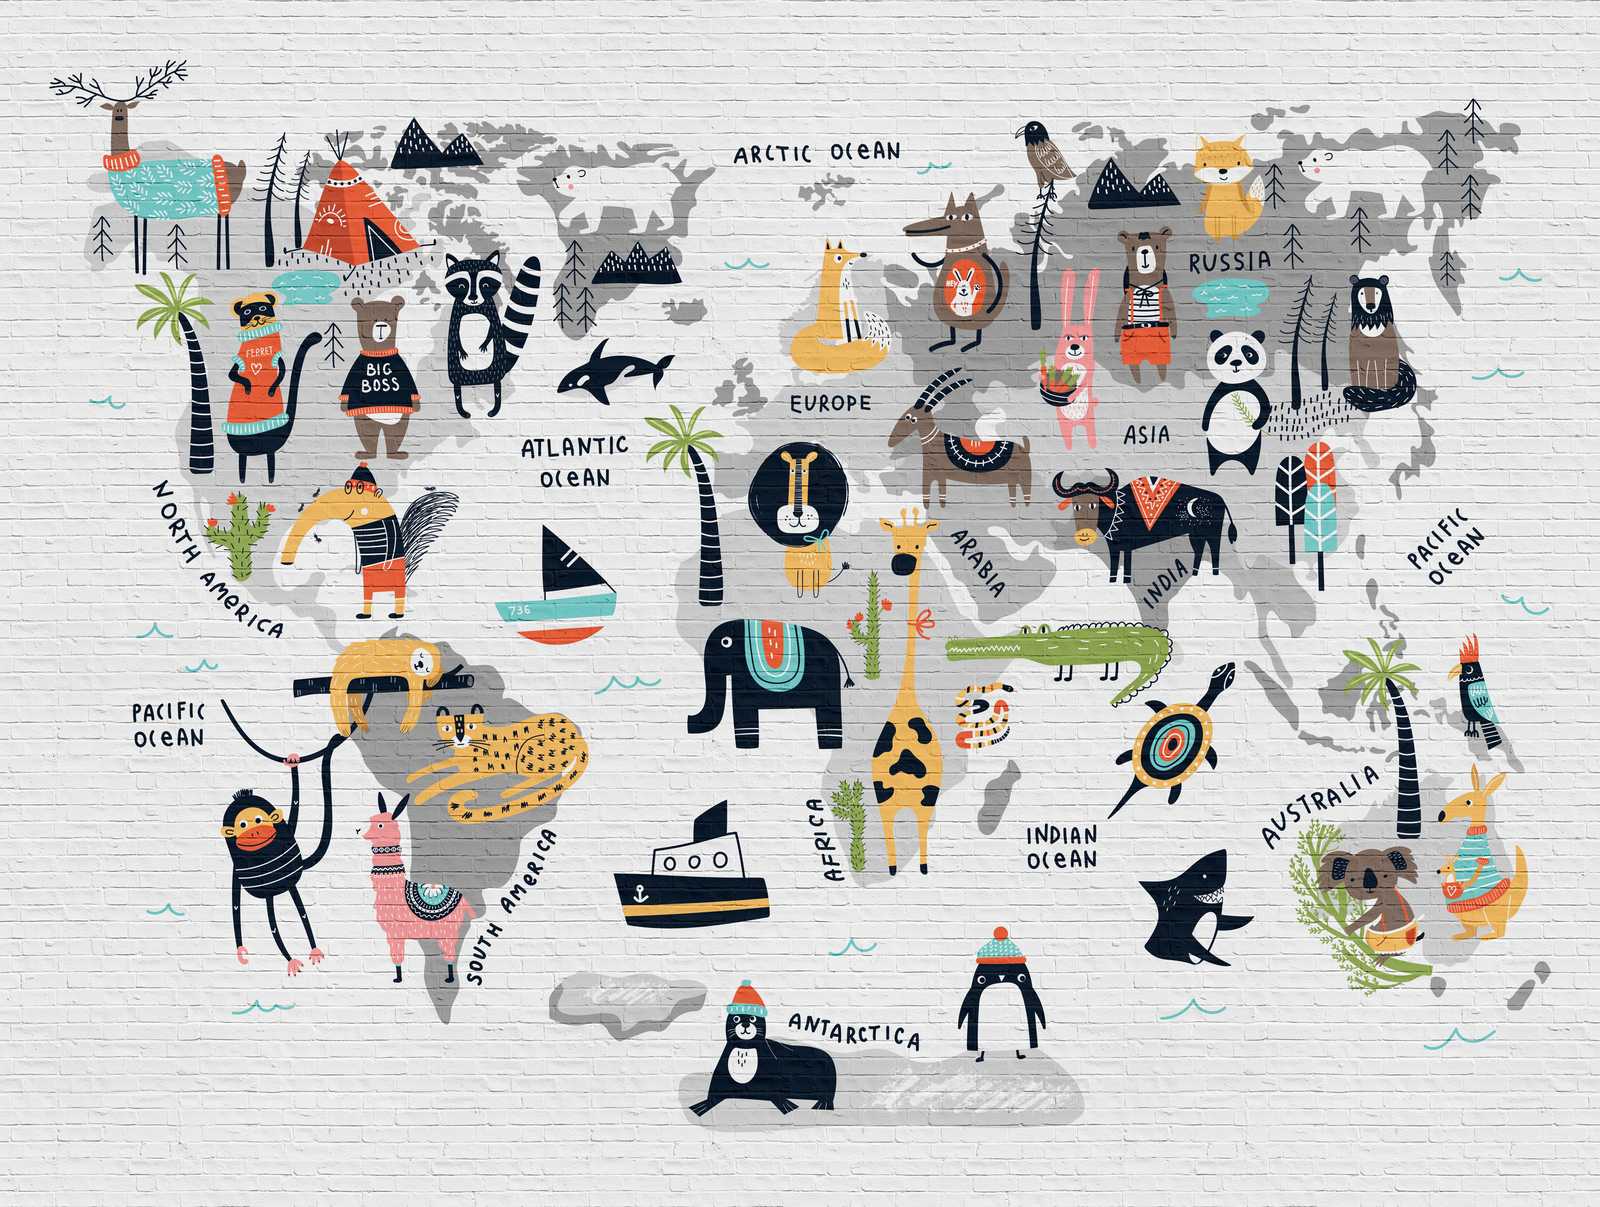             Tapeten-Neuheit | Kinderzimmer Tapete Weltkarte mit Tiermotiven
        